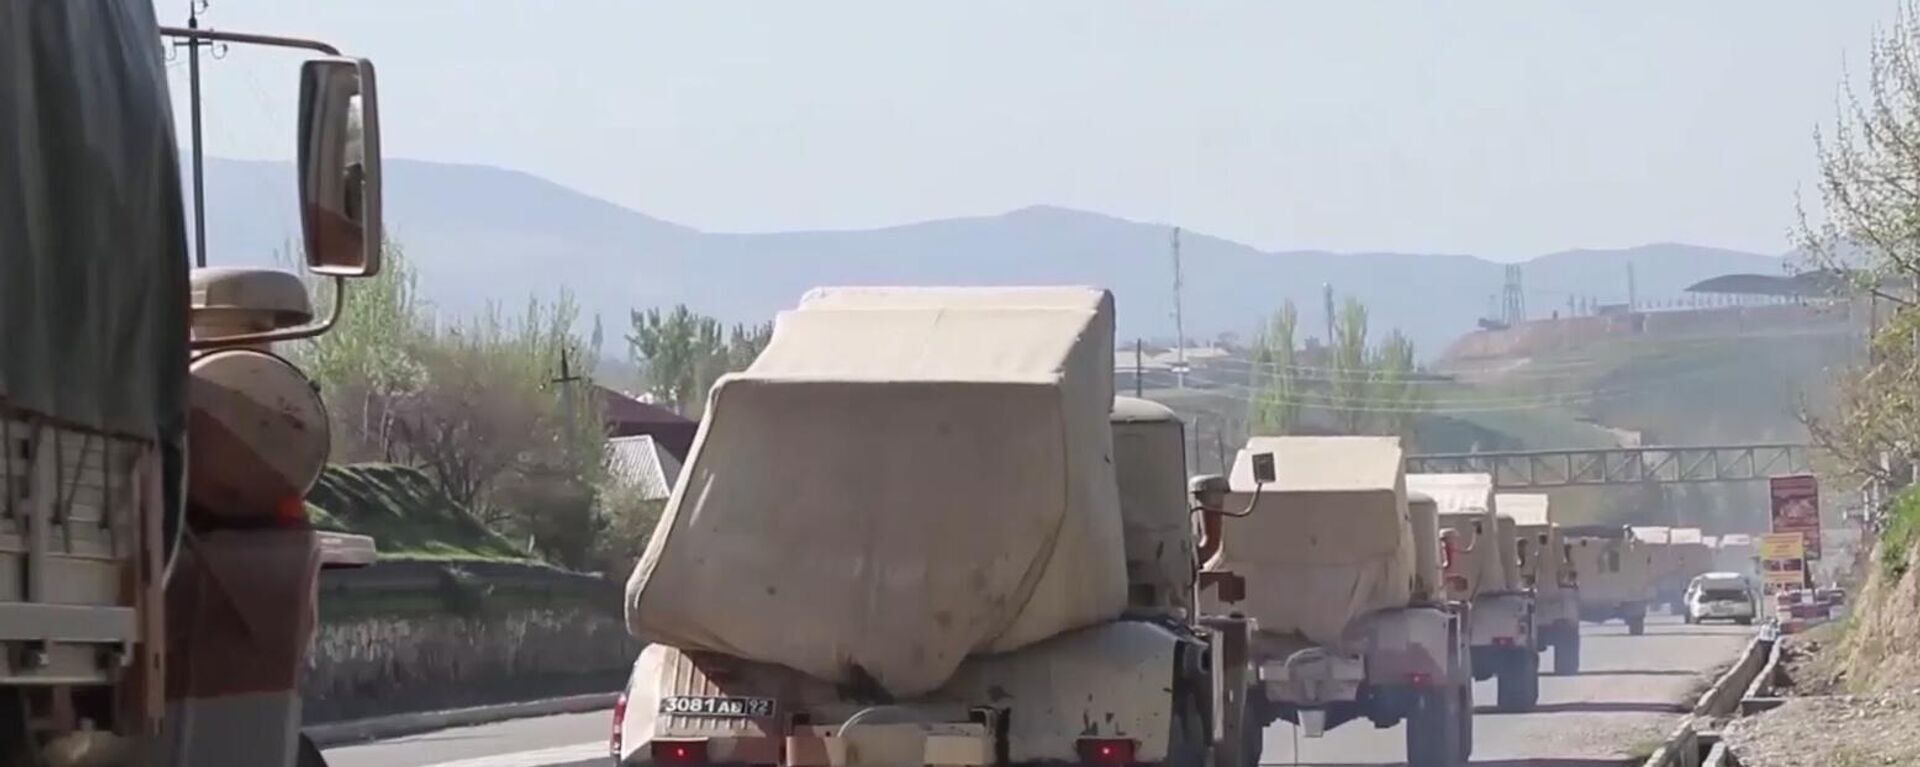 Vehículos militares rusos circulan por una carretera en Tayikistán, el 28 de julio de 2021 - Sputnik Mundo, 1920, 17.08.2021